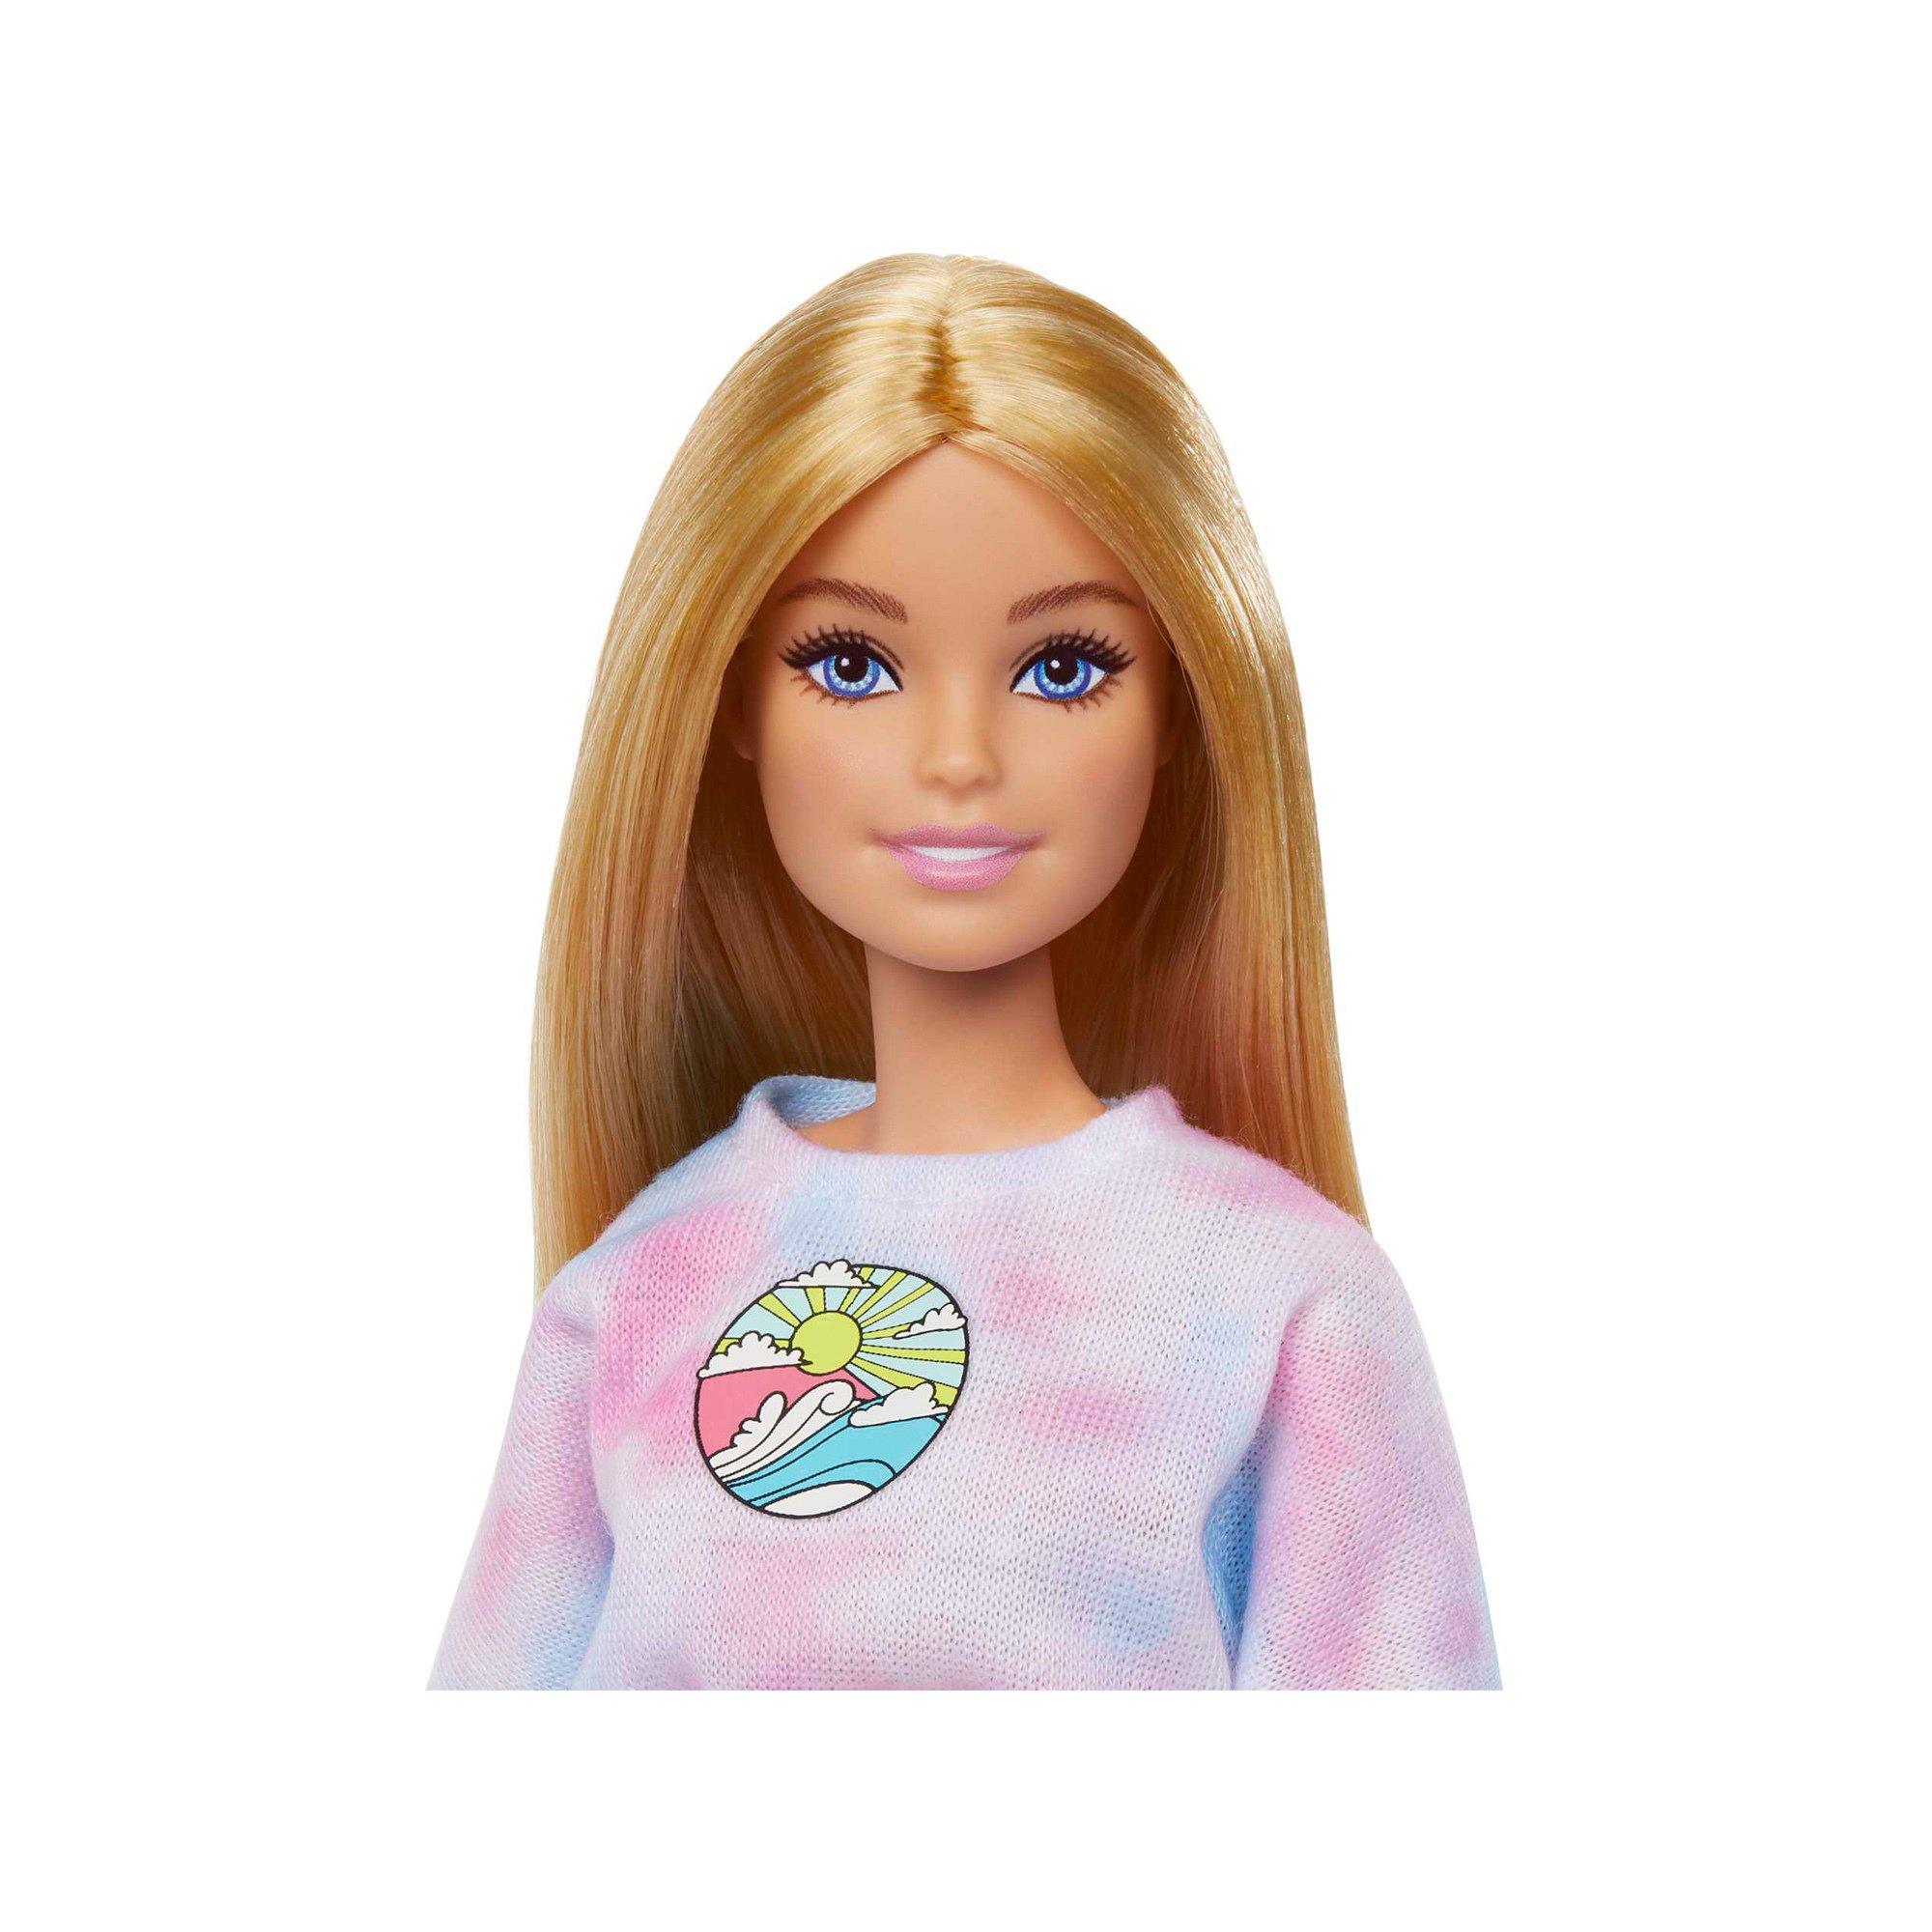 Barbie  Malibu Stylistin 